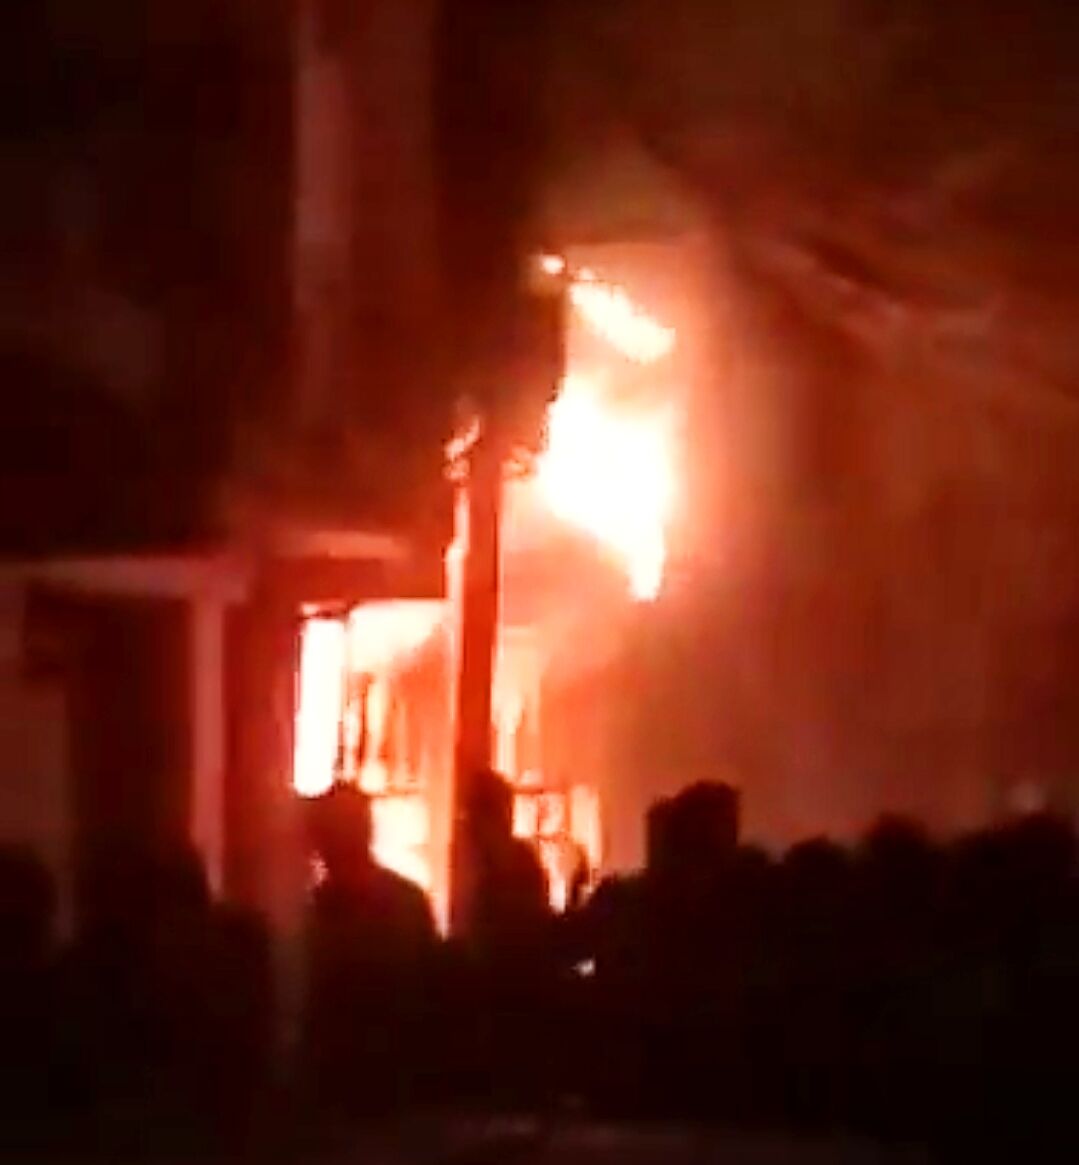 साउथ दिल्ली के ज़ाकिर नगर इलाके में बहुमंजिला इमारत में भीषण आग, 6 लोगों की मौत 11 गंभीर ज़ख्मी